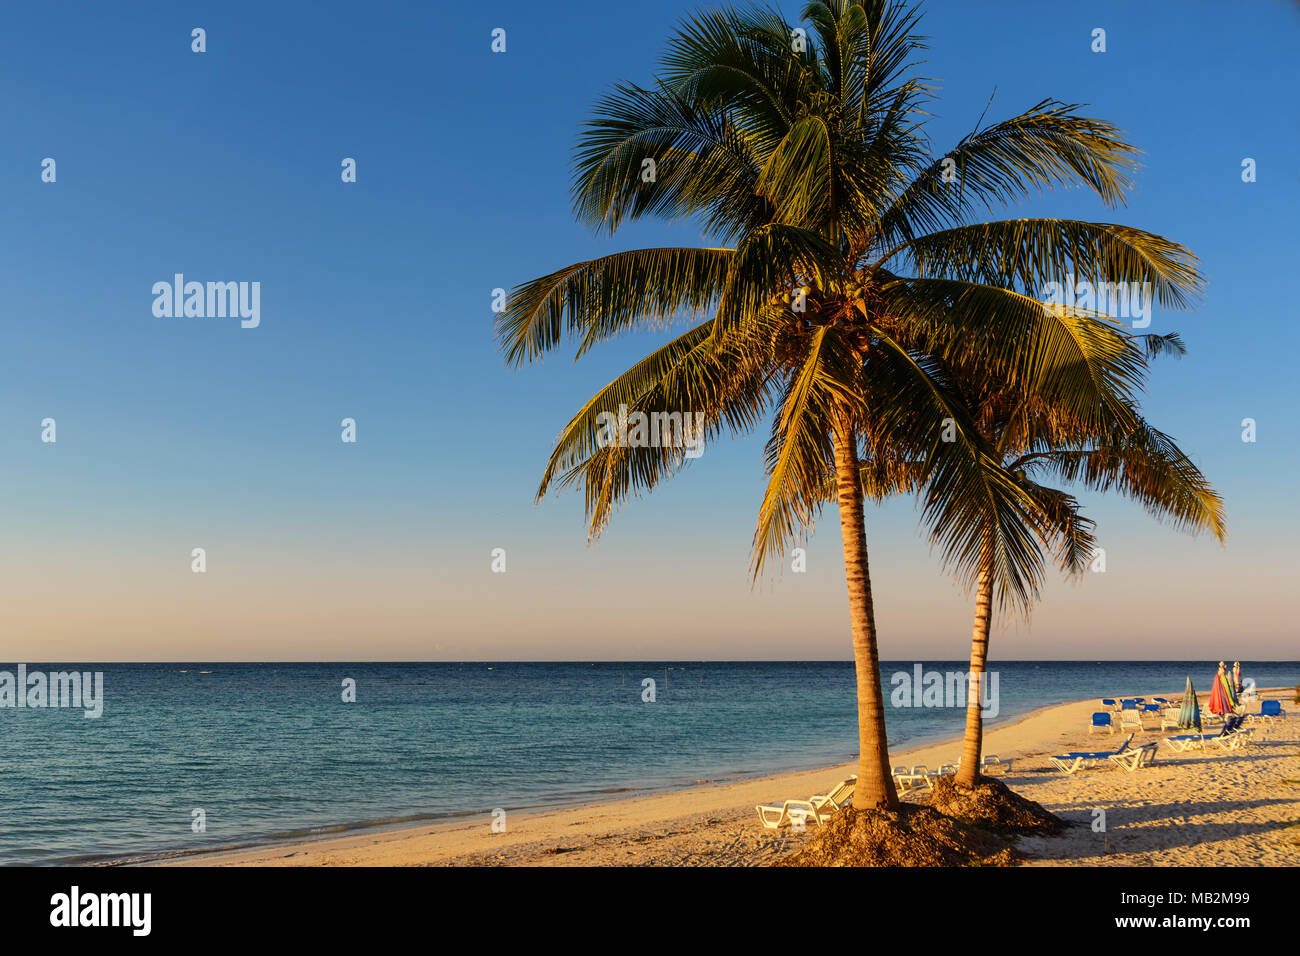 Palmen am Strand von einer tropischen Insel in Kuba (cajo Jutias) Stockfoto